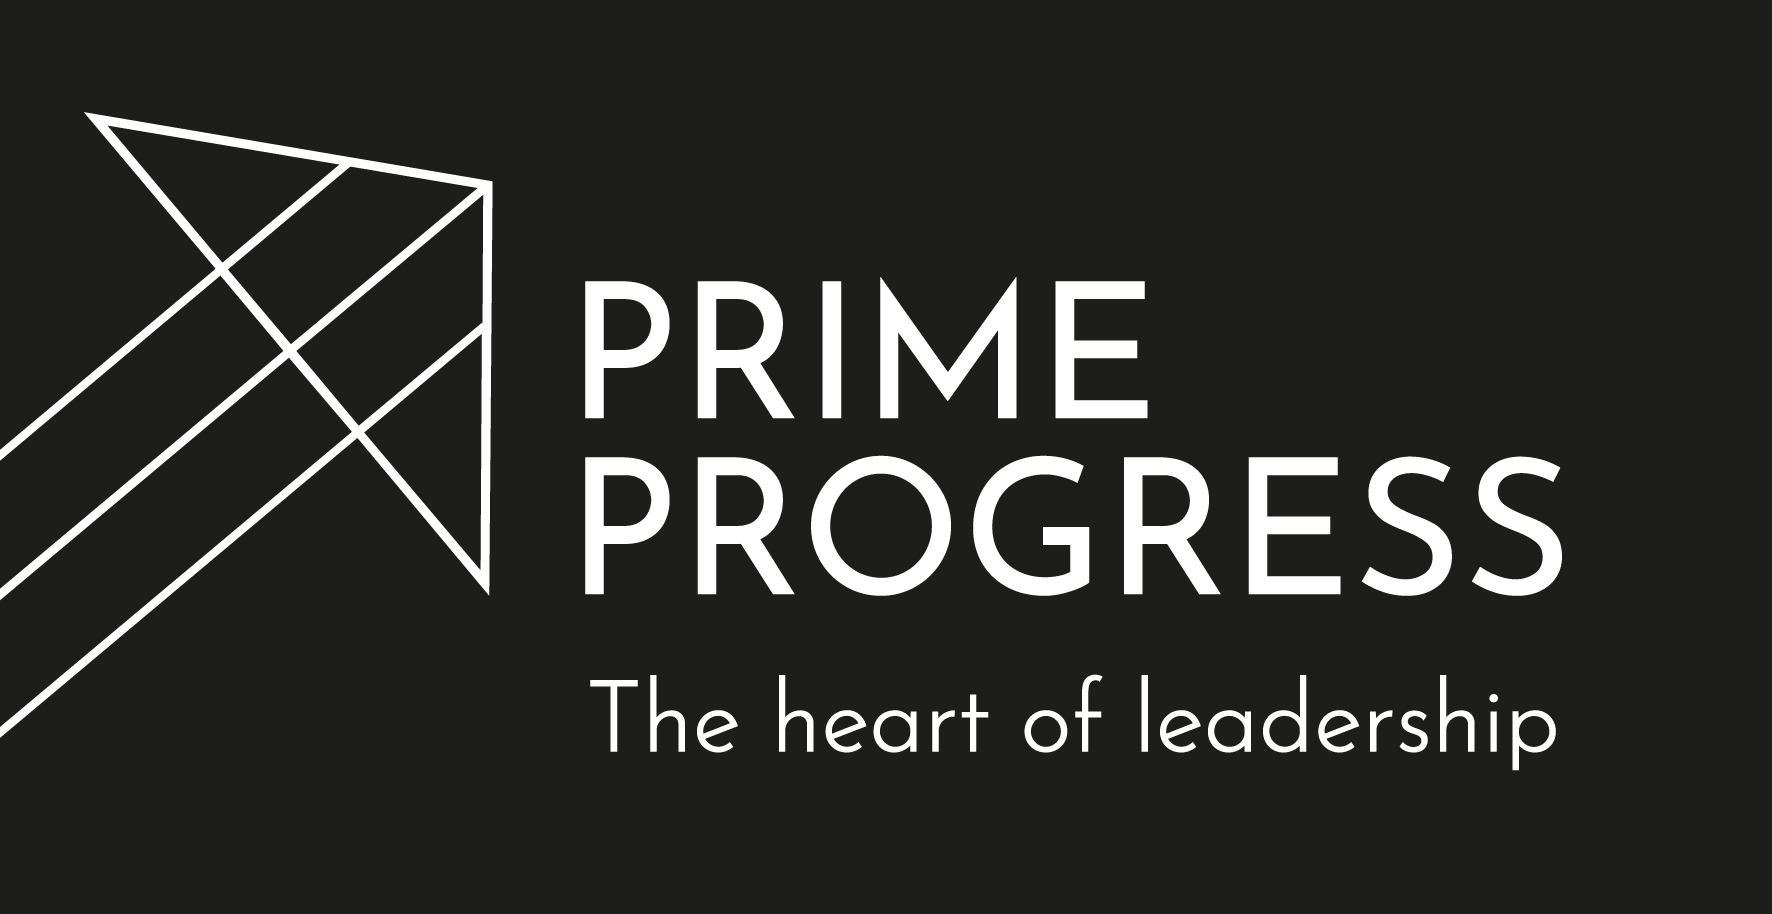 Prime Progress